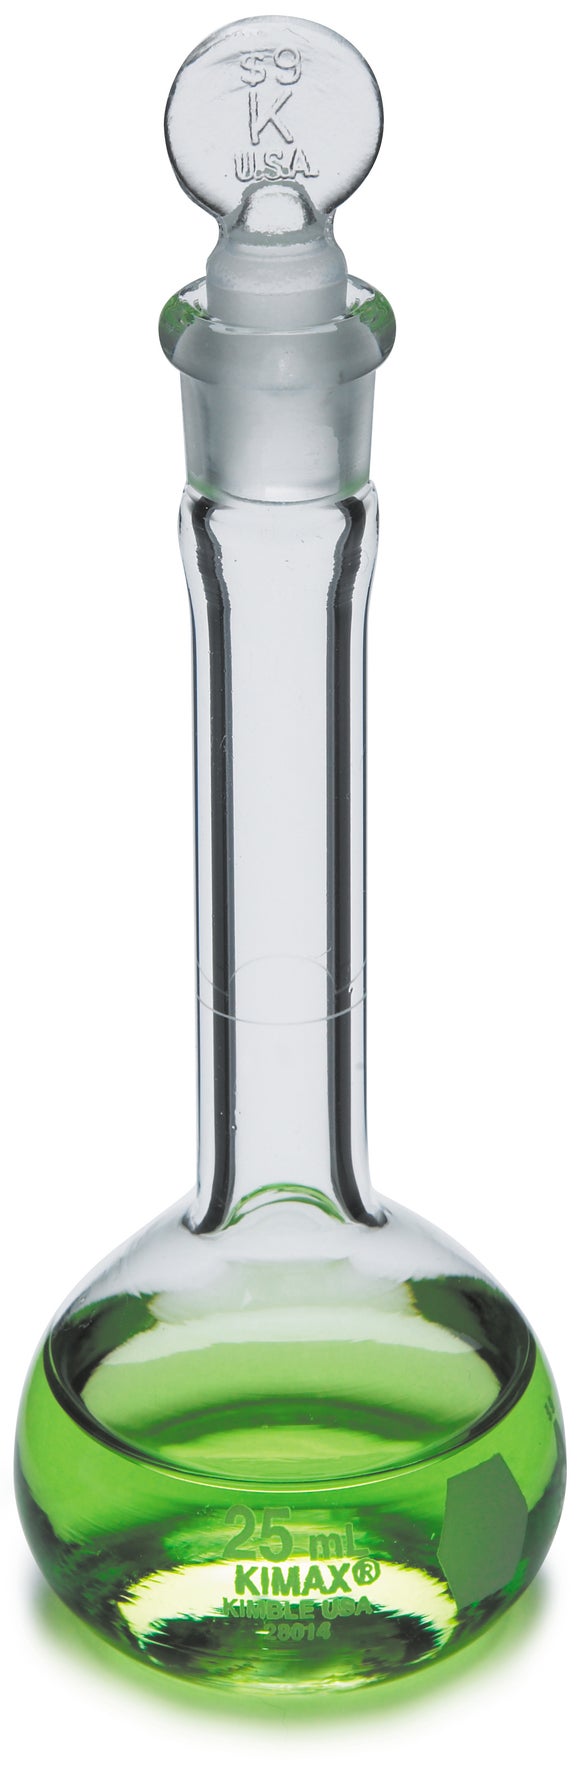 Flask, volumetric class A, glass, 100 mL